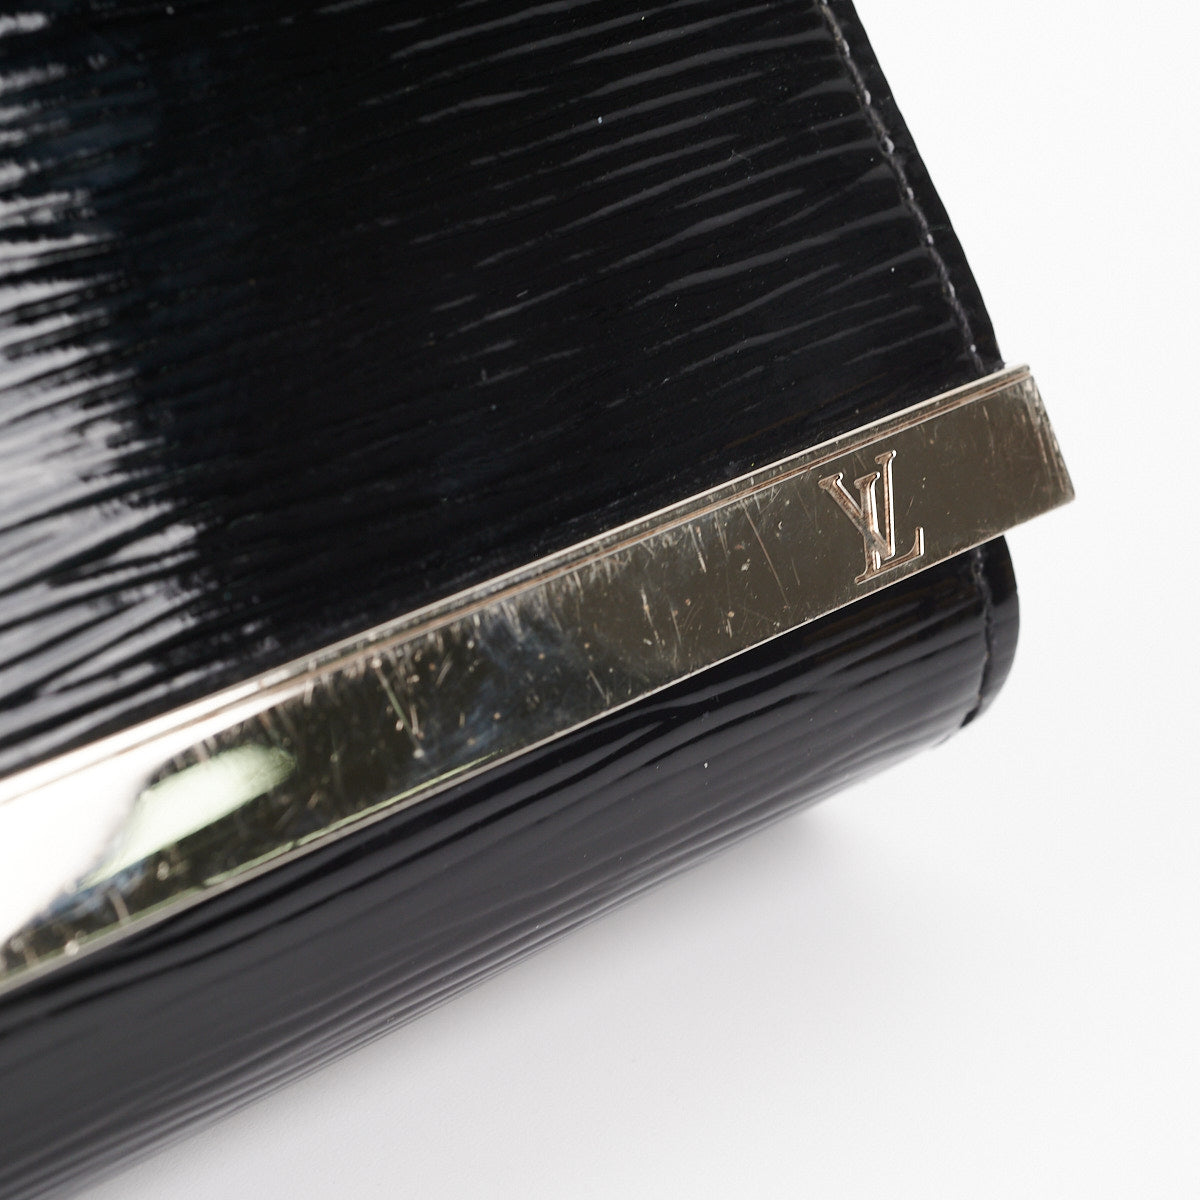 Louis Vuitton Epi Sevigne Clutch - Black Clutches, Handbags - LOU750576